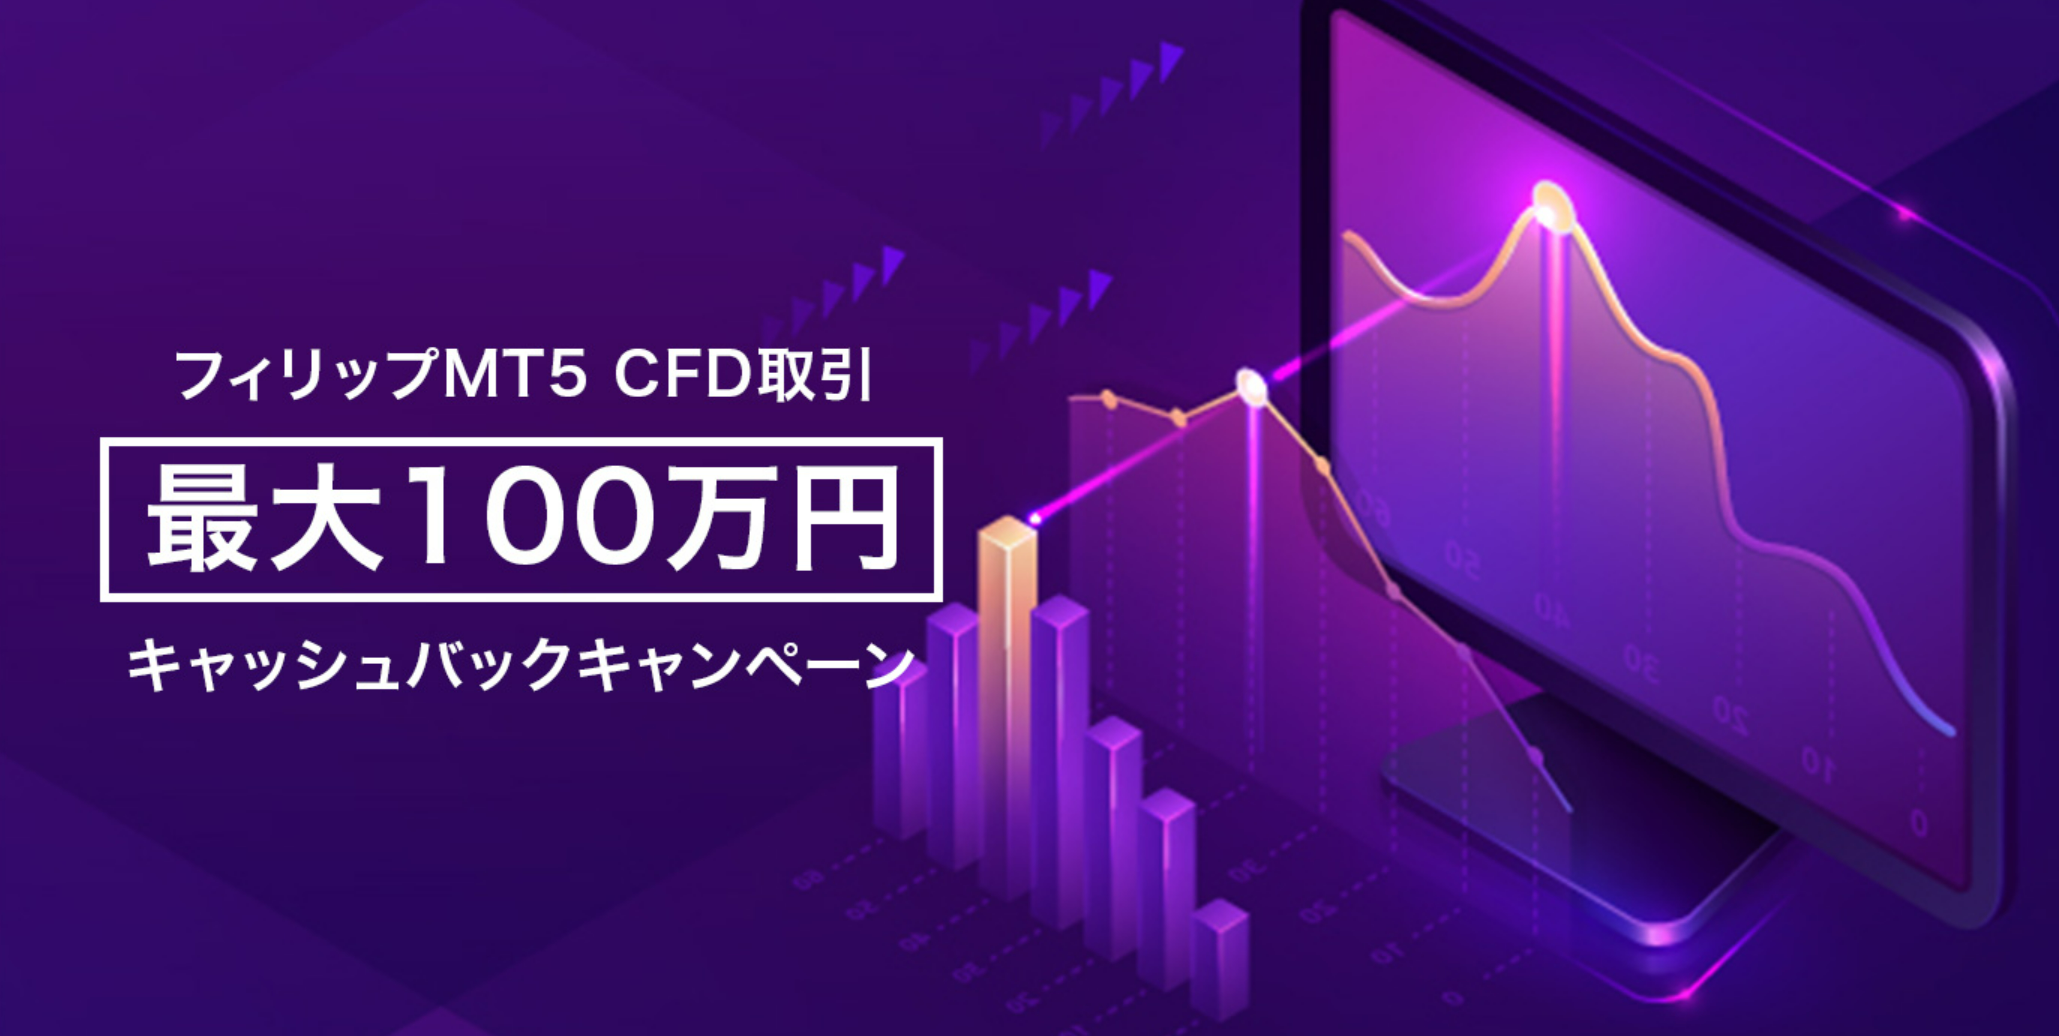 フィリップMT5 CFD取引 最大100万円 キャッシュバックキャンペーン